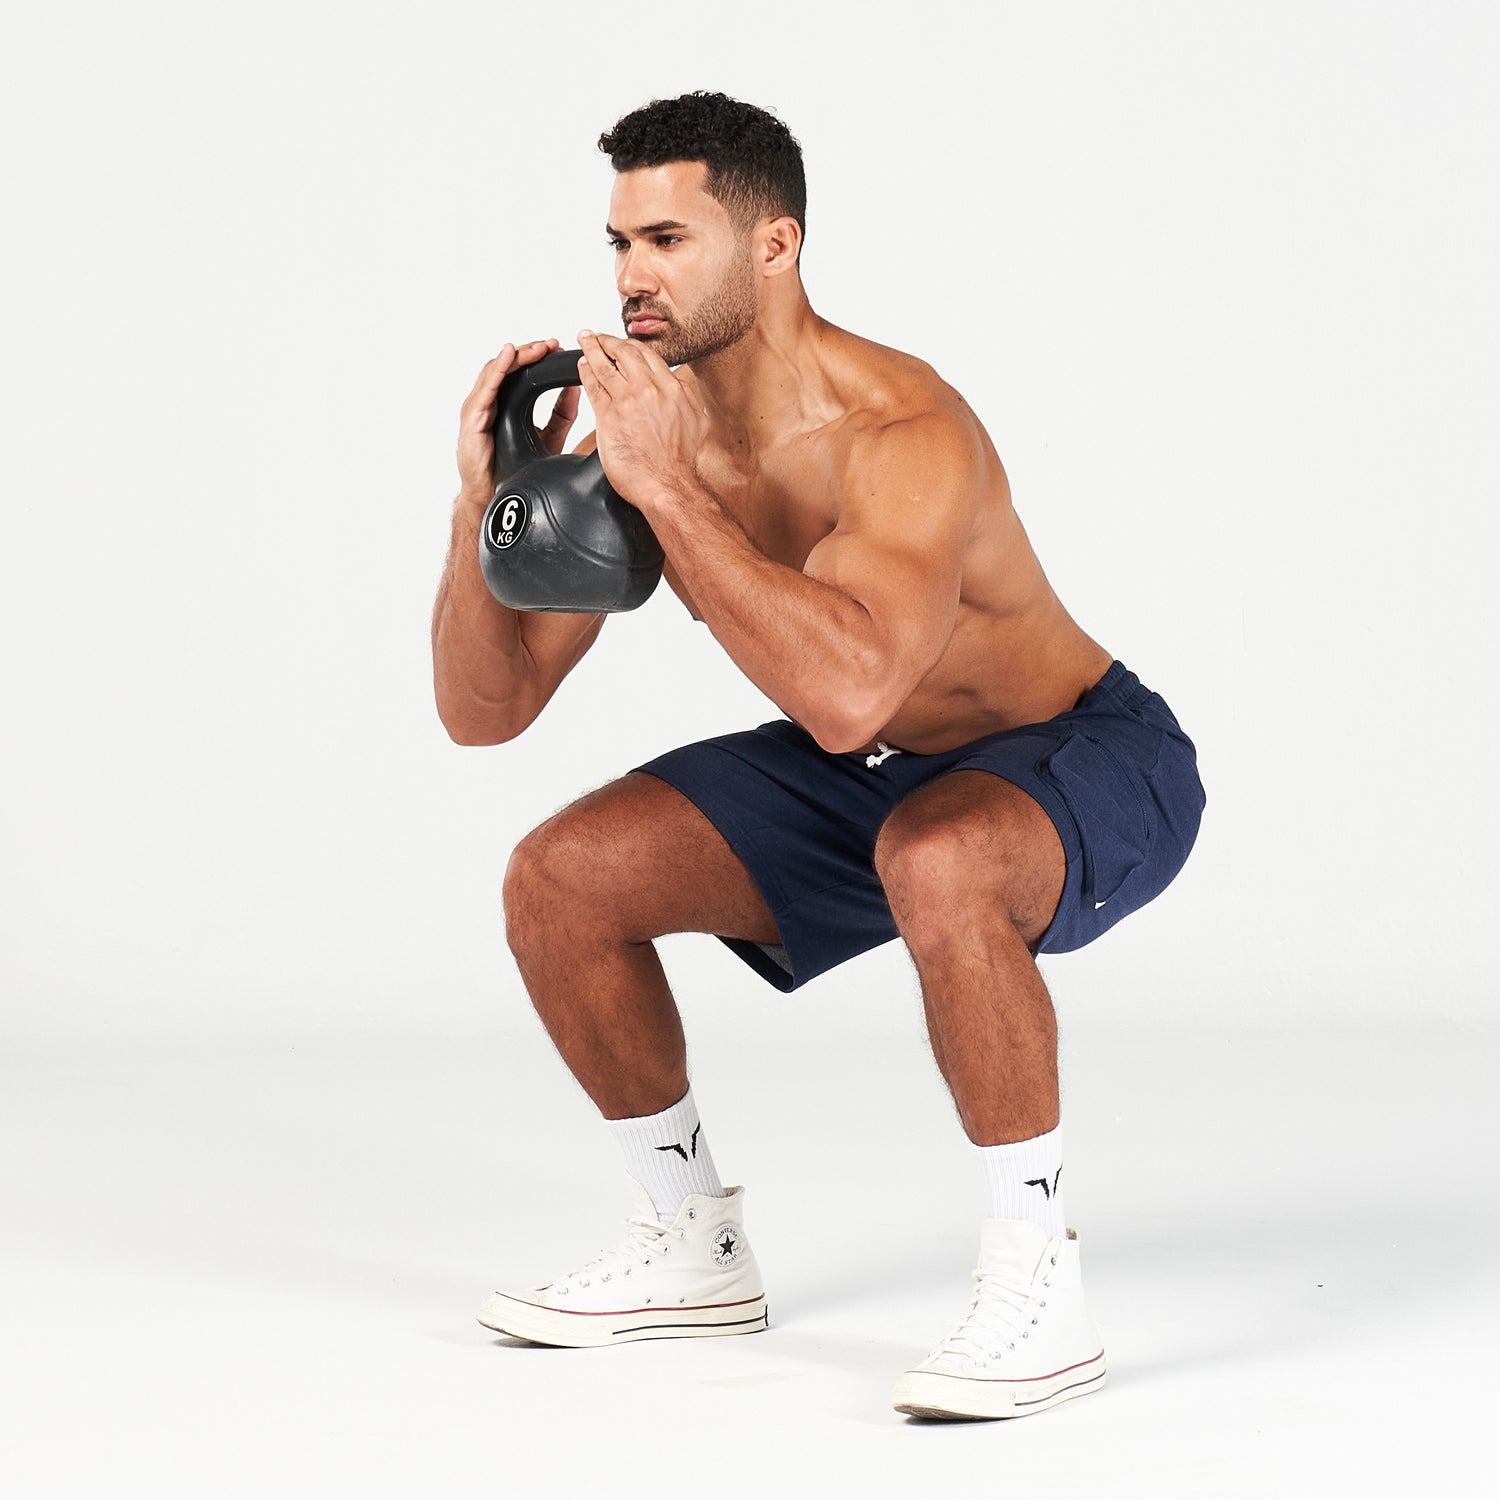 squatwolf-gym-wear-golden-era-new-gen-jogger-shorts-navy-marl-workout-short-for-men